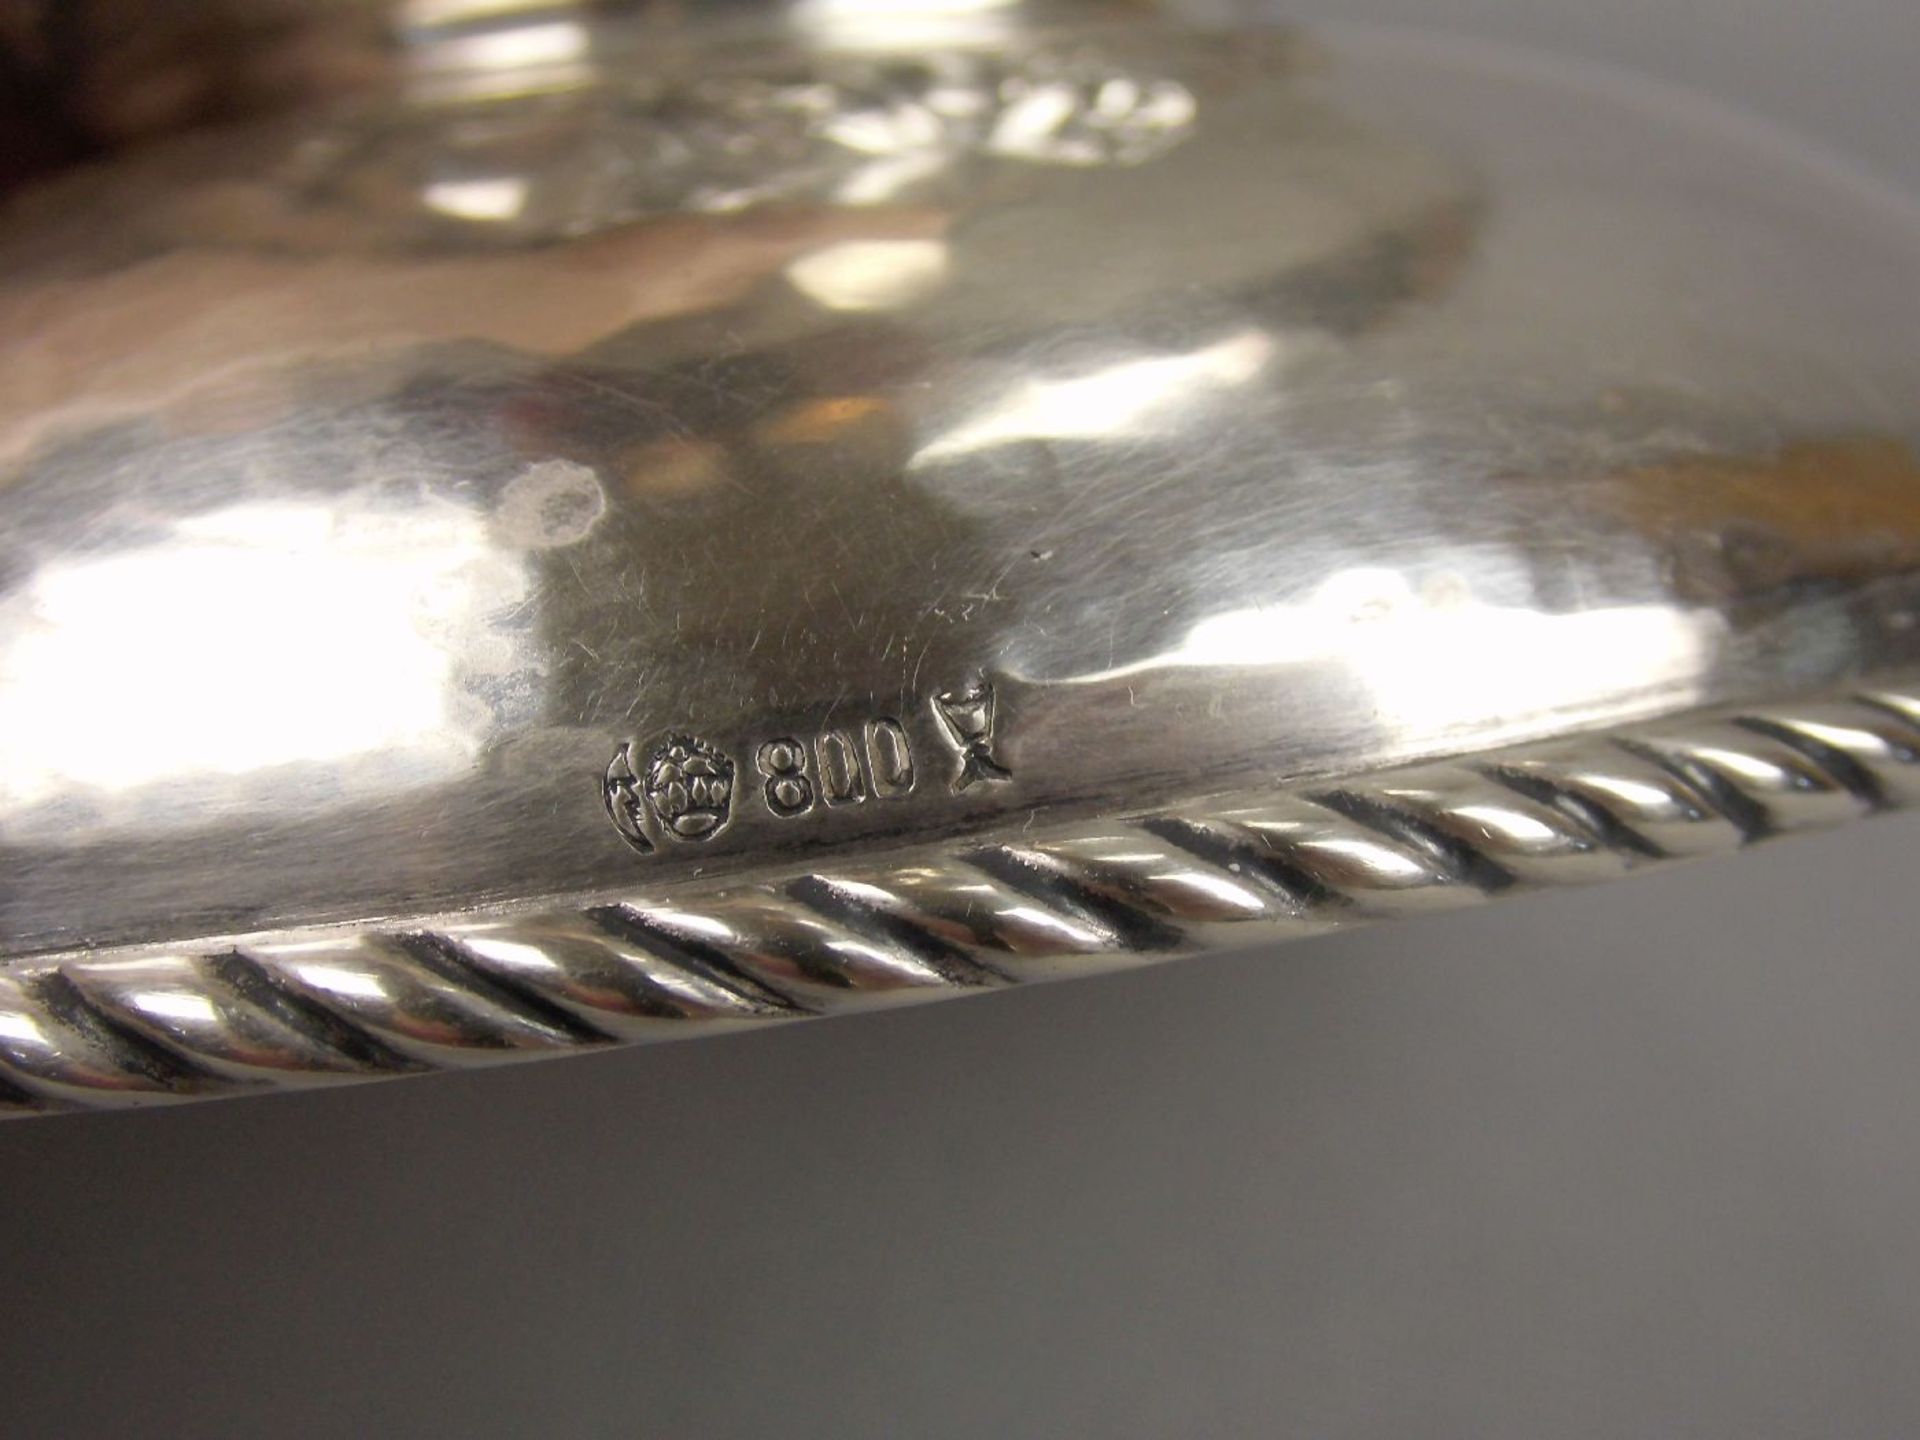 FUSSSCHALE / SCHALE, 800er Silber (538 g), deutsch, gepunzt mit Halbmond, Krone, Feingehaltsangabe - Image 4 of 4